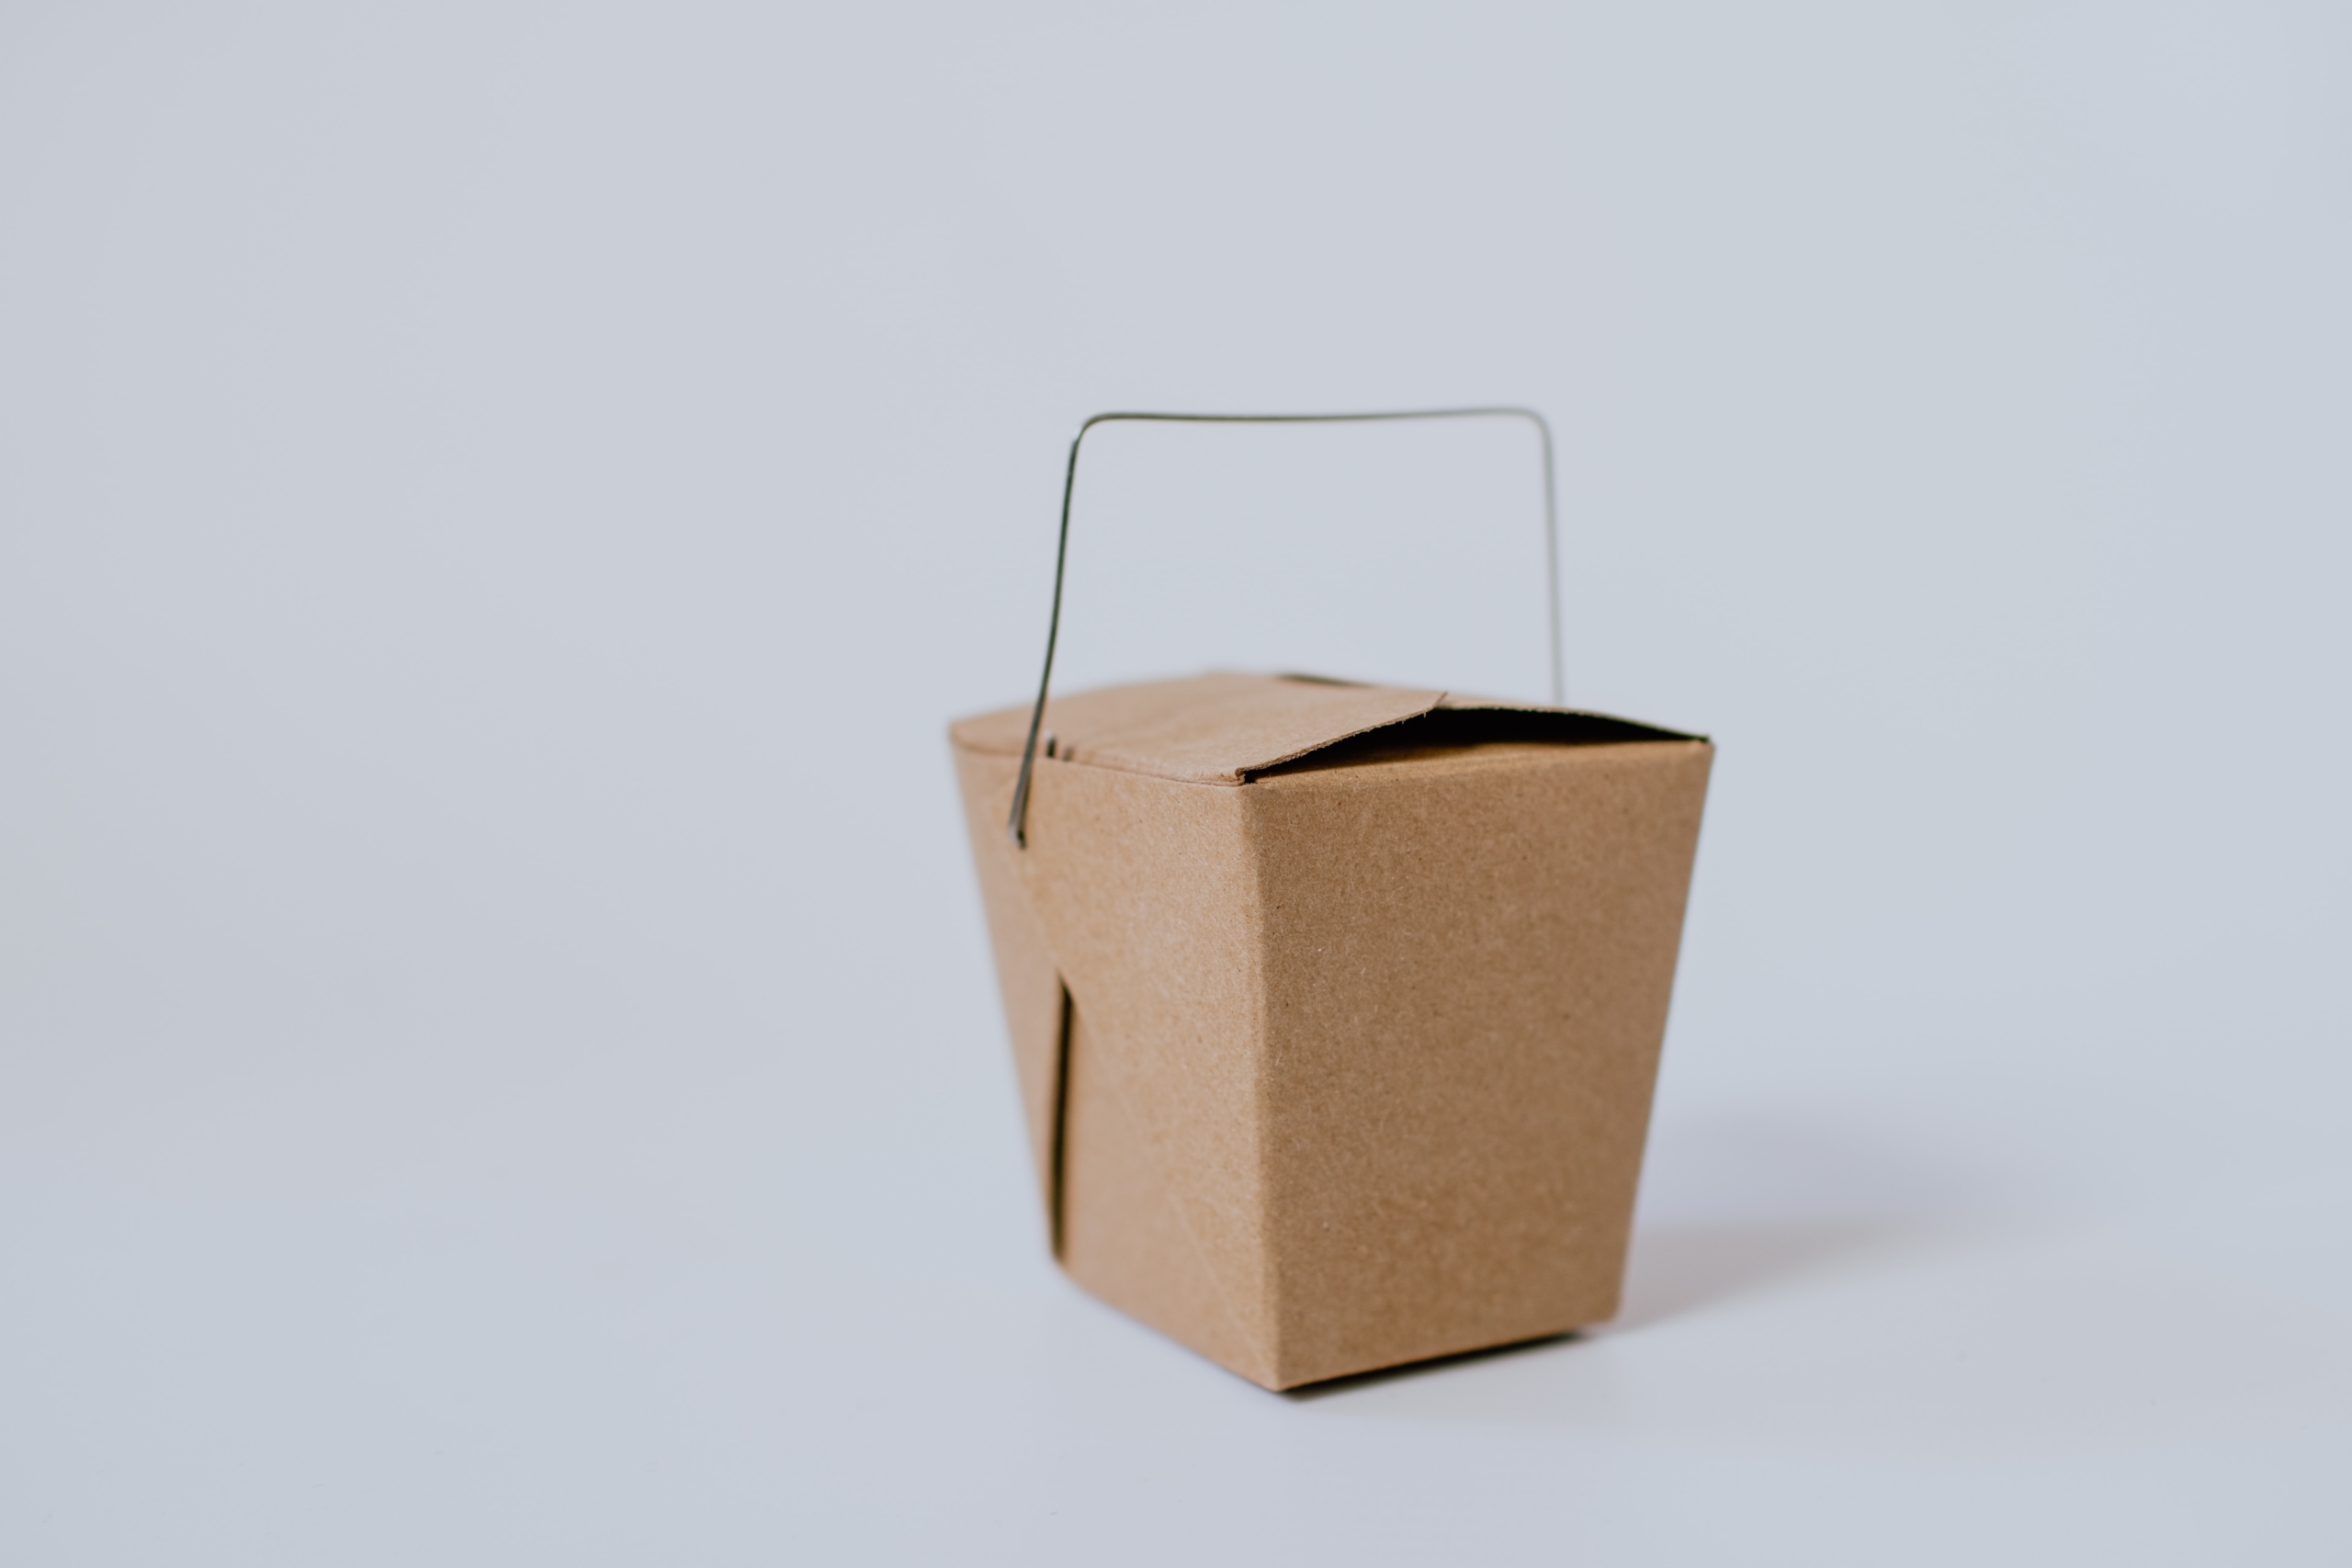 Eine kleine Box aus Karton